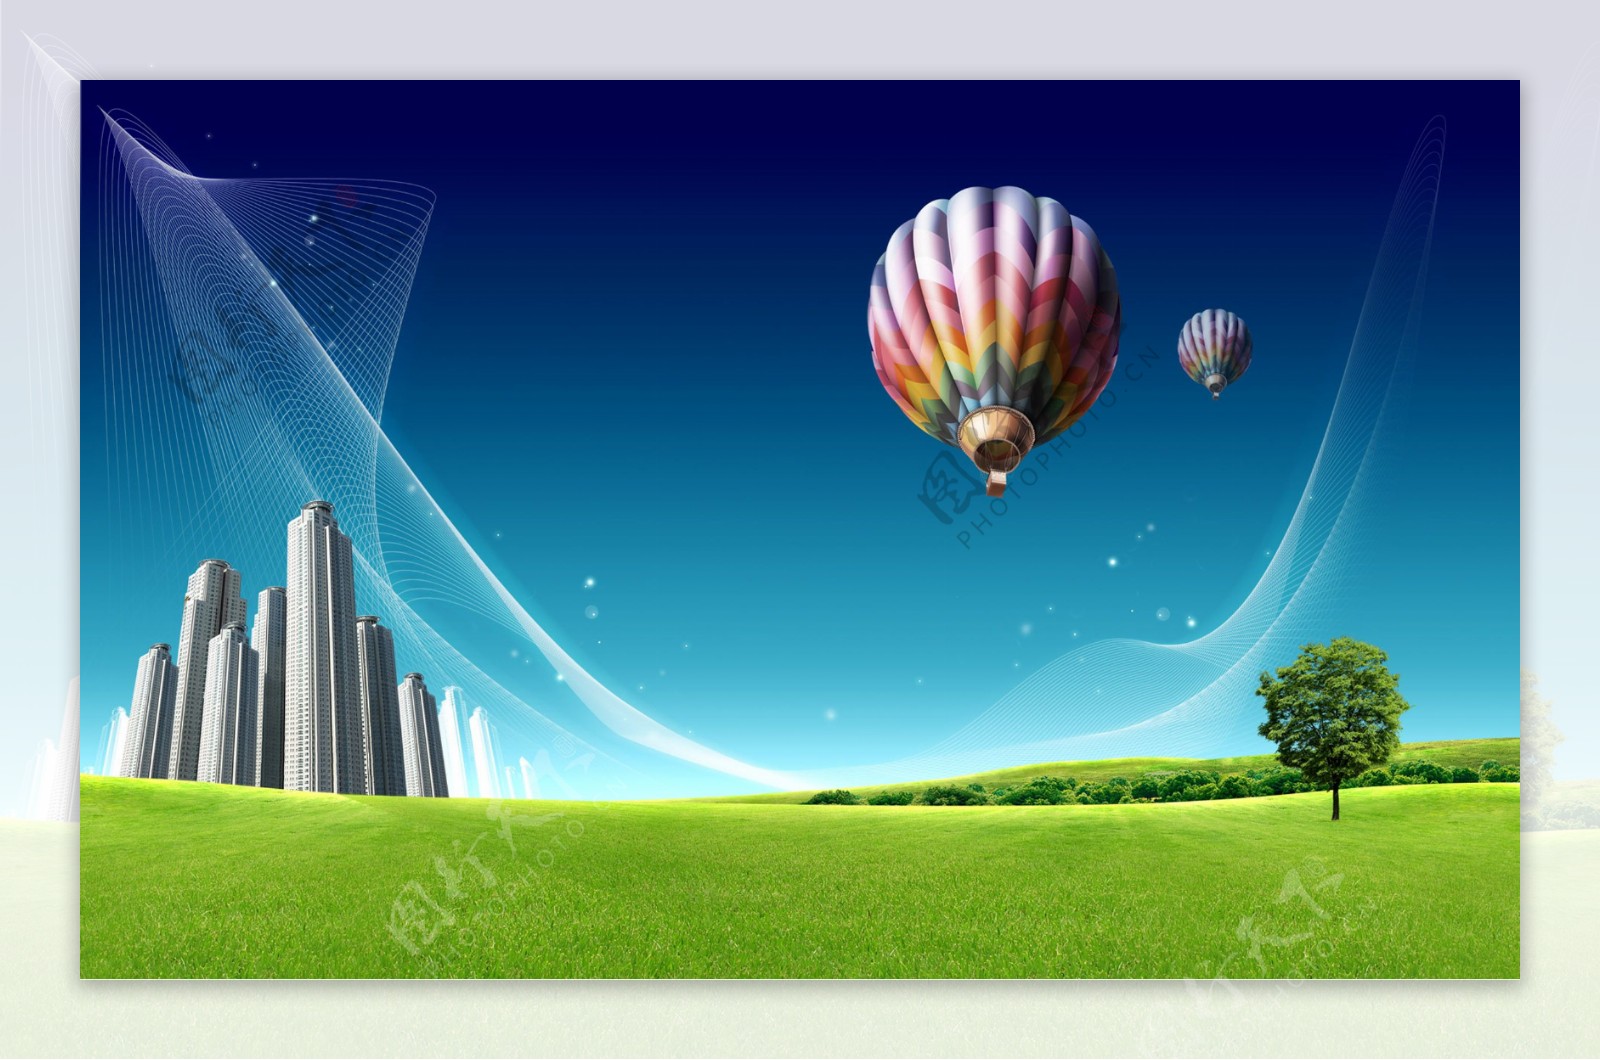 蓝天绿地热气球背景图